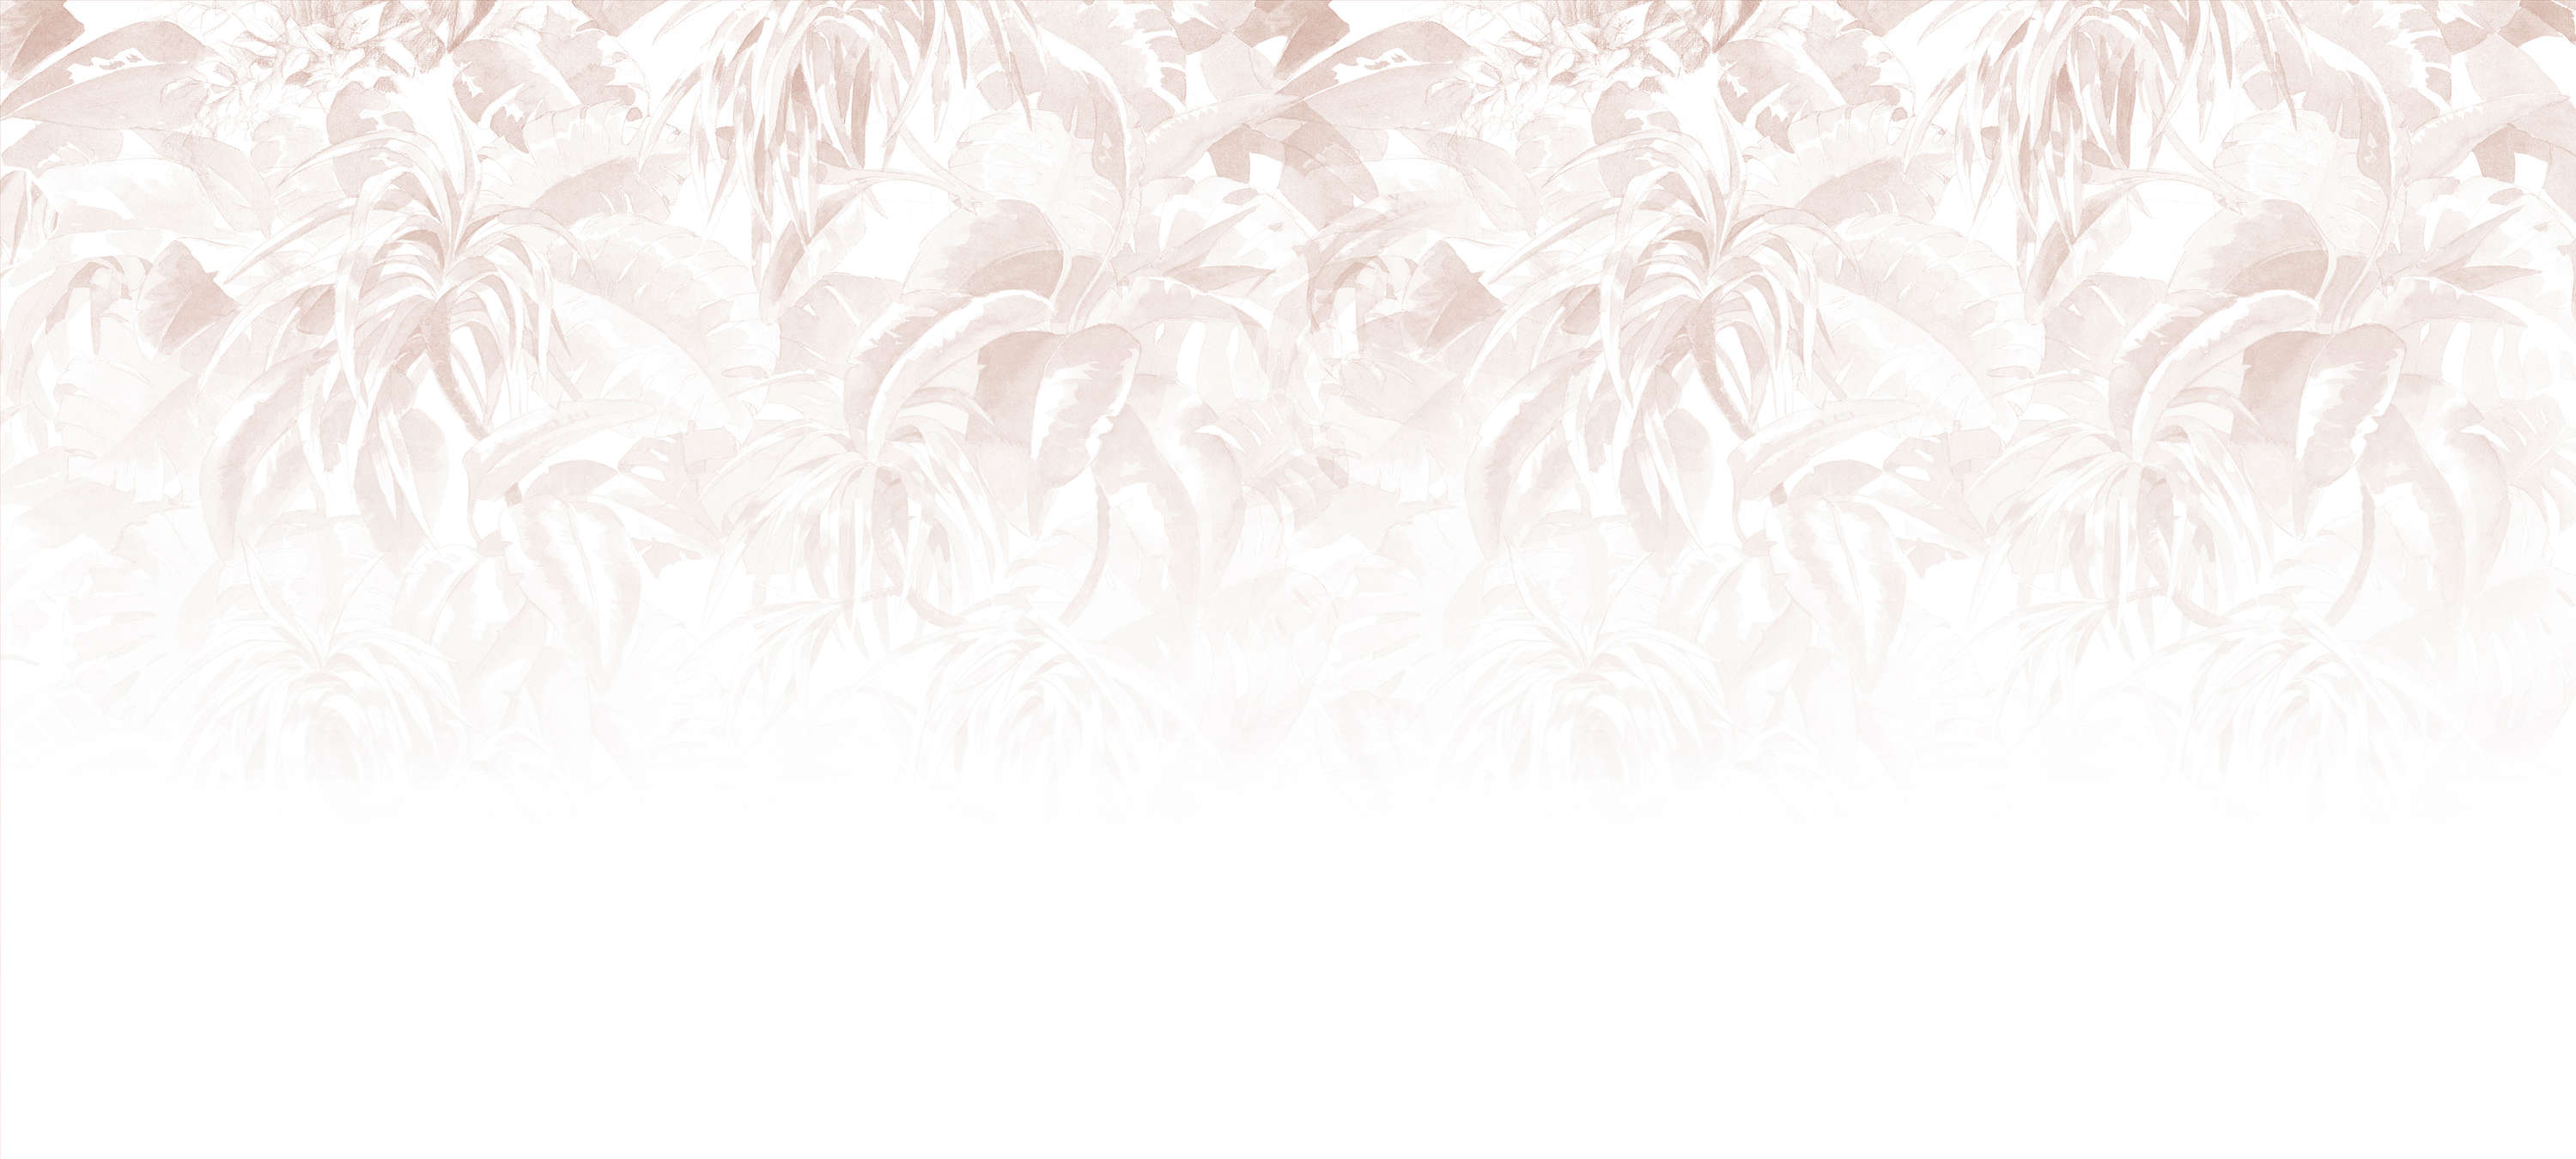             Papier peint à motif de feuilles, féminin & minimaliste - rose, blanc, gris
        